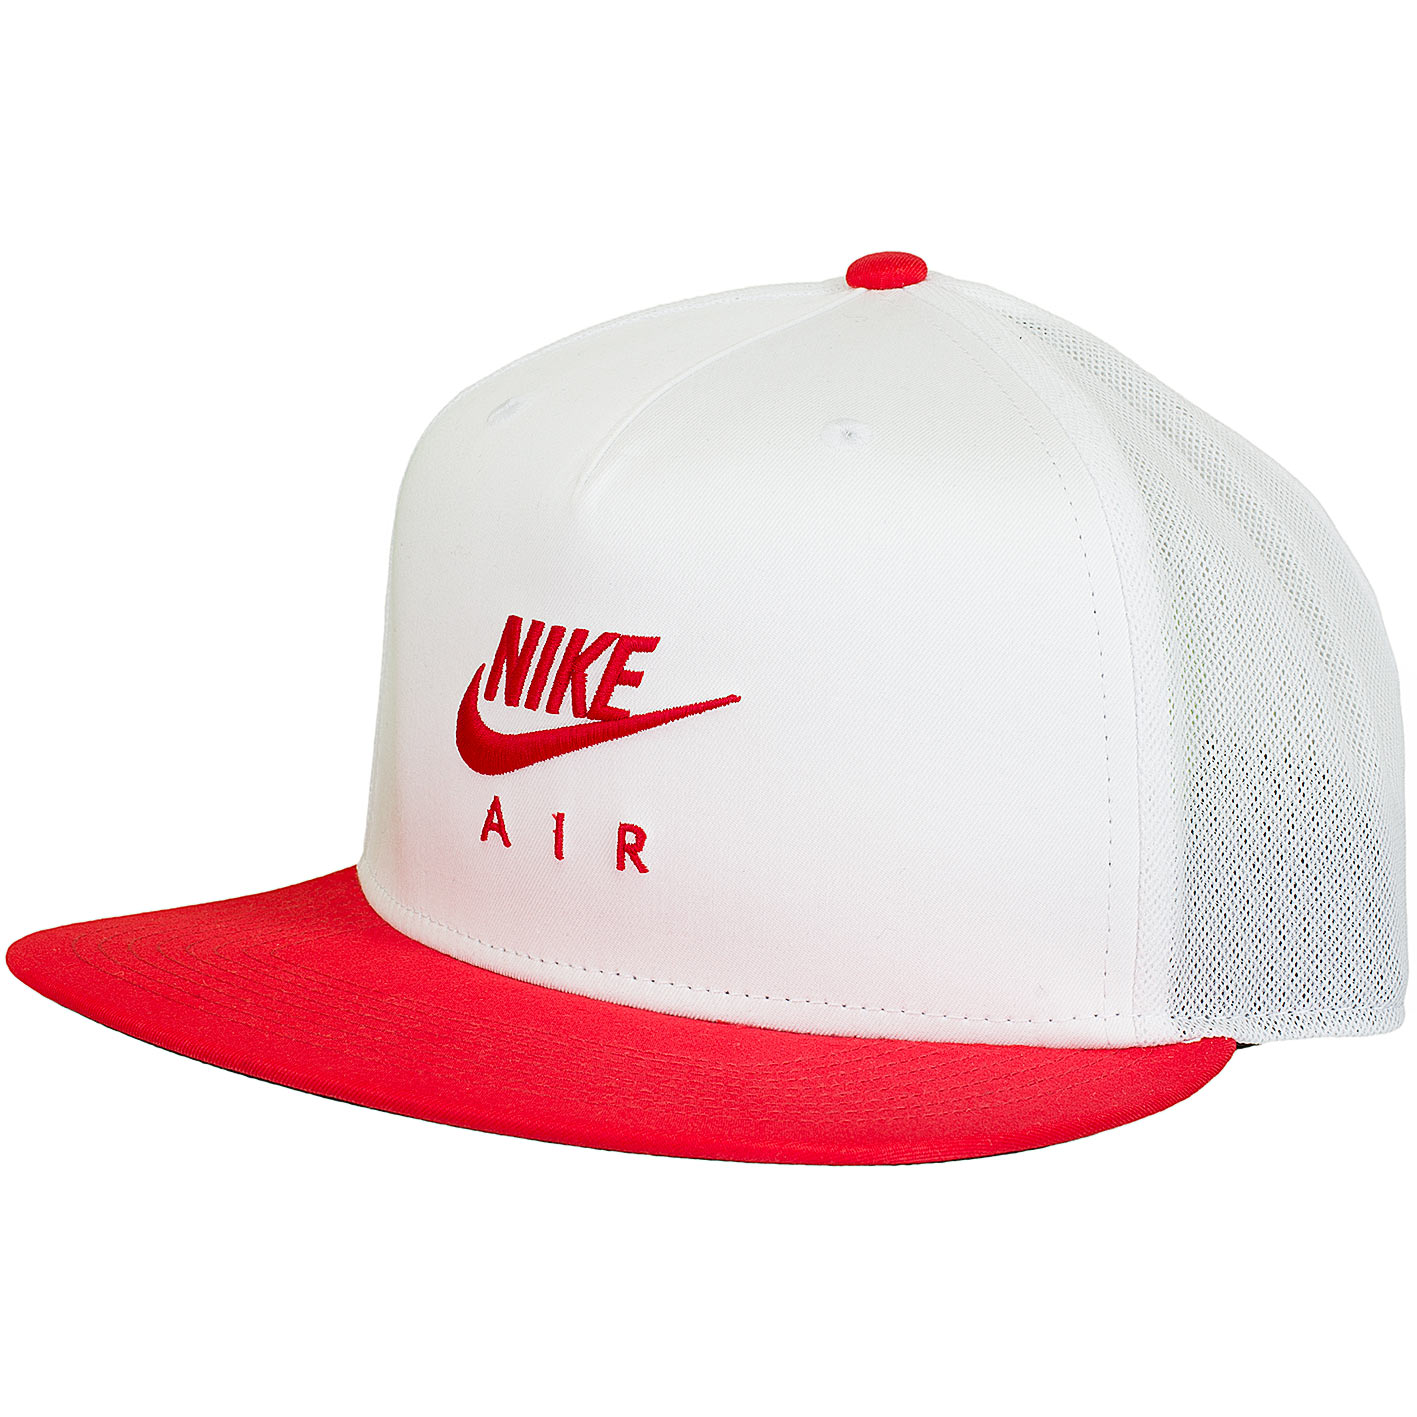 ☆ Nike Trucker Cap Air Pro weiß/rot - hier bestellen!